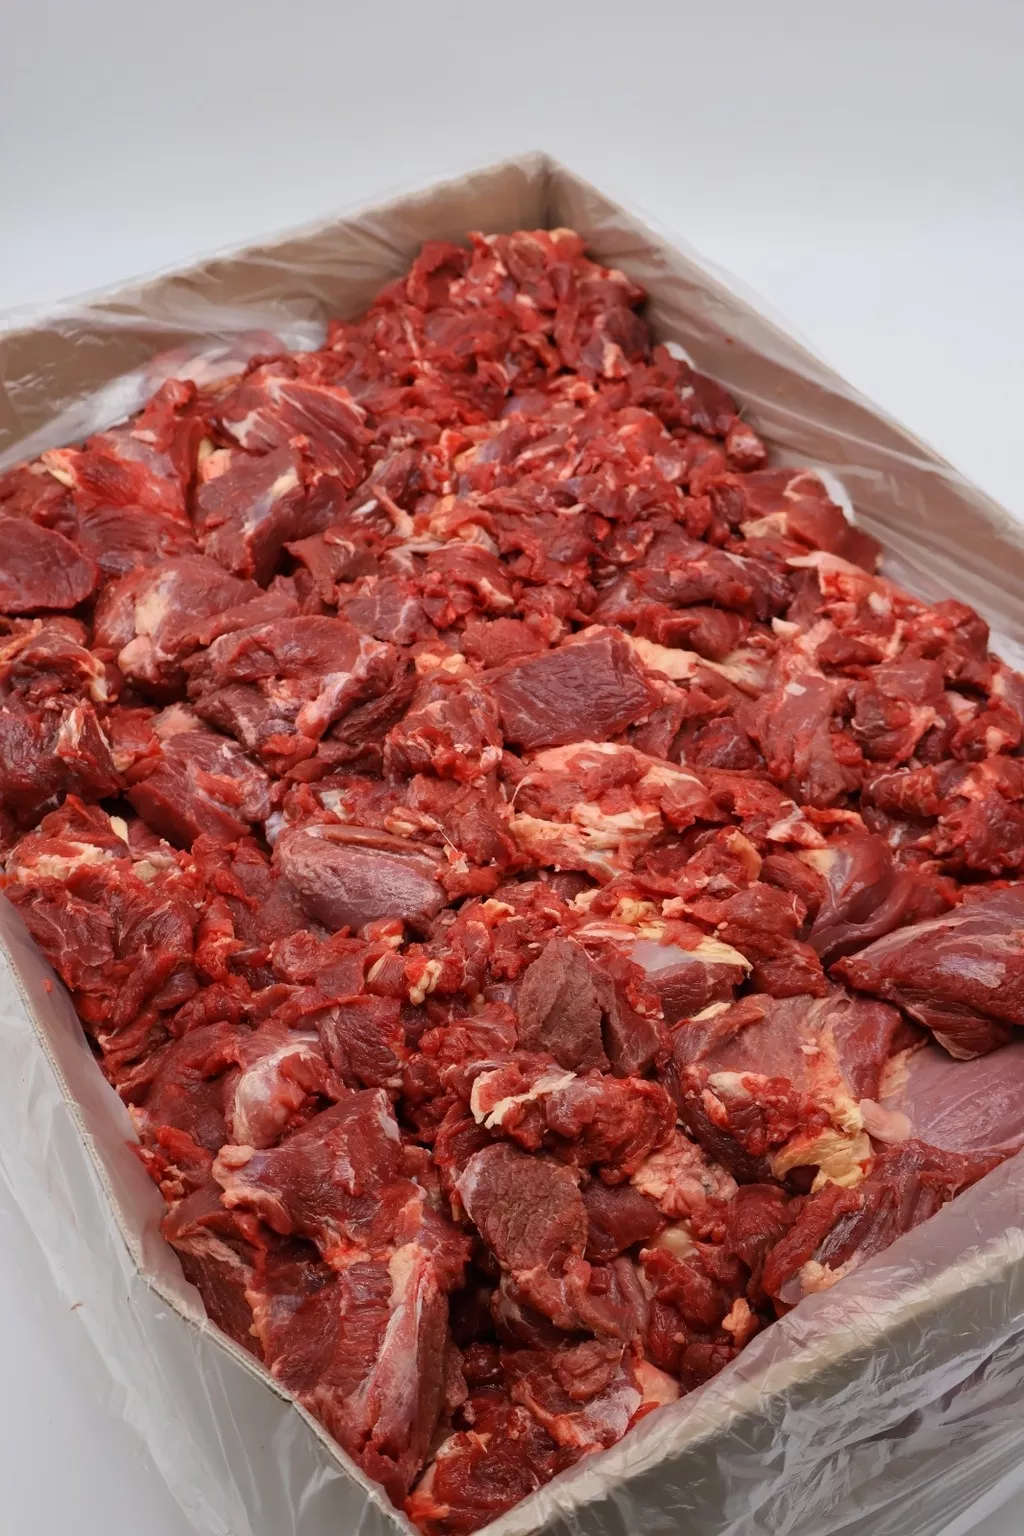 мясо котлетное говяжье зам в Москве и Московской области